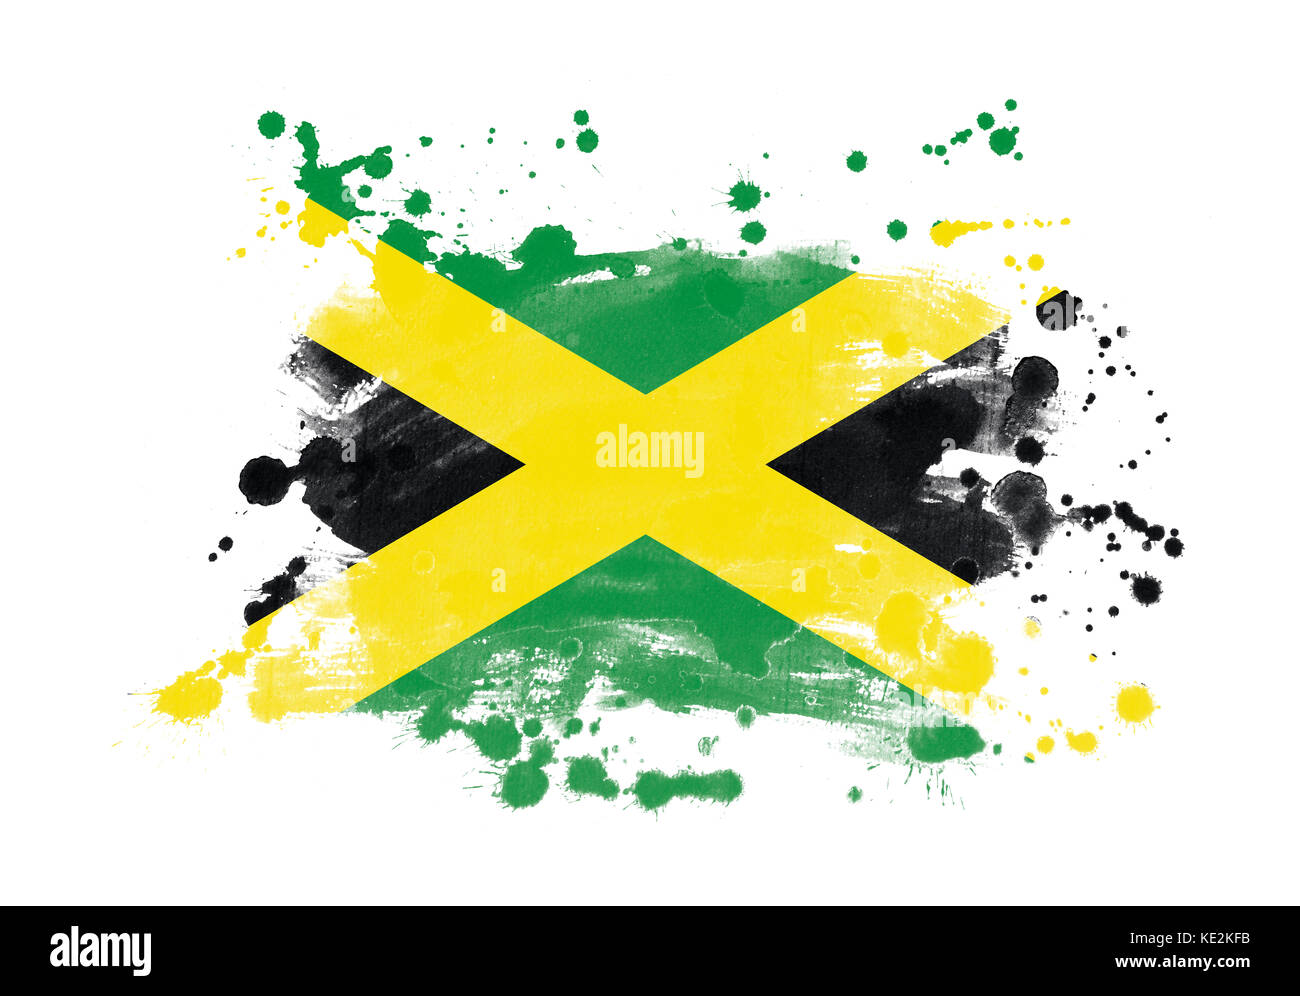 Jamaica flag grunge painted background Stock Photo